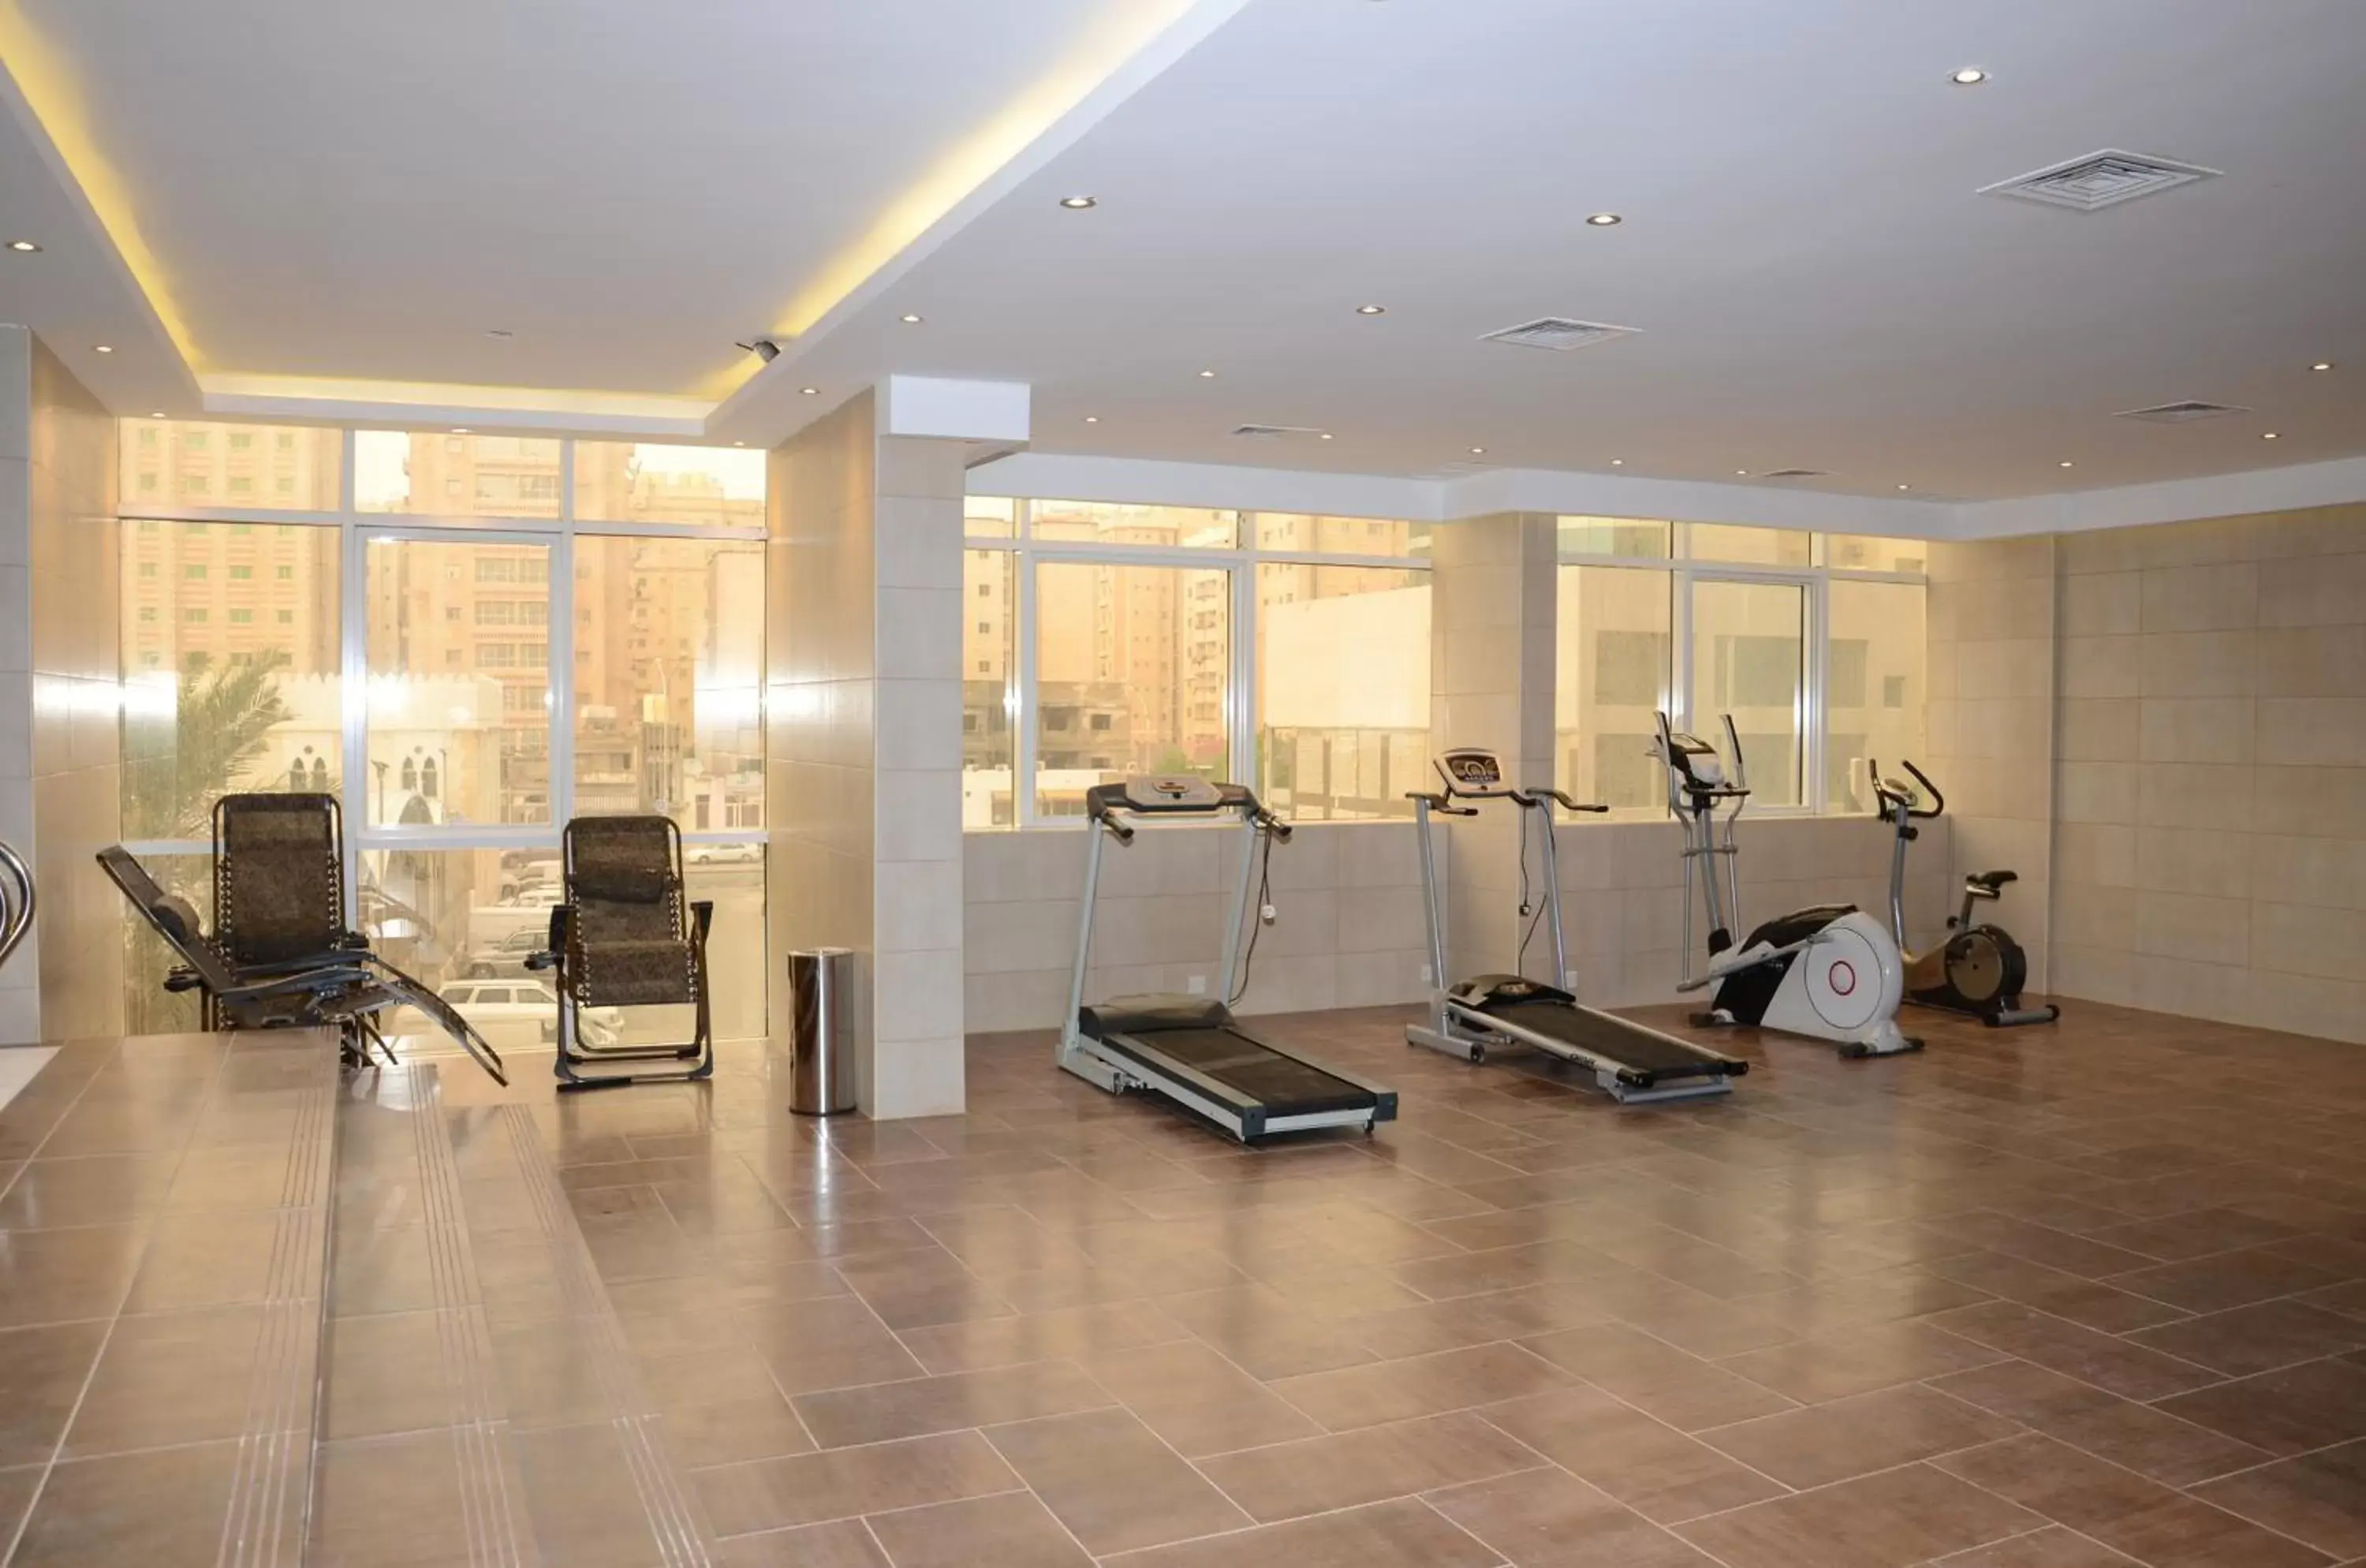 Fitness centre/facilities, Fitness Center/Facilities in Continental Inn Hotel Al Farwaniya